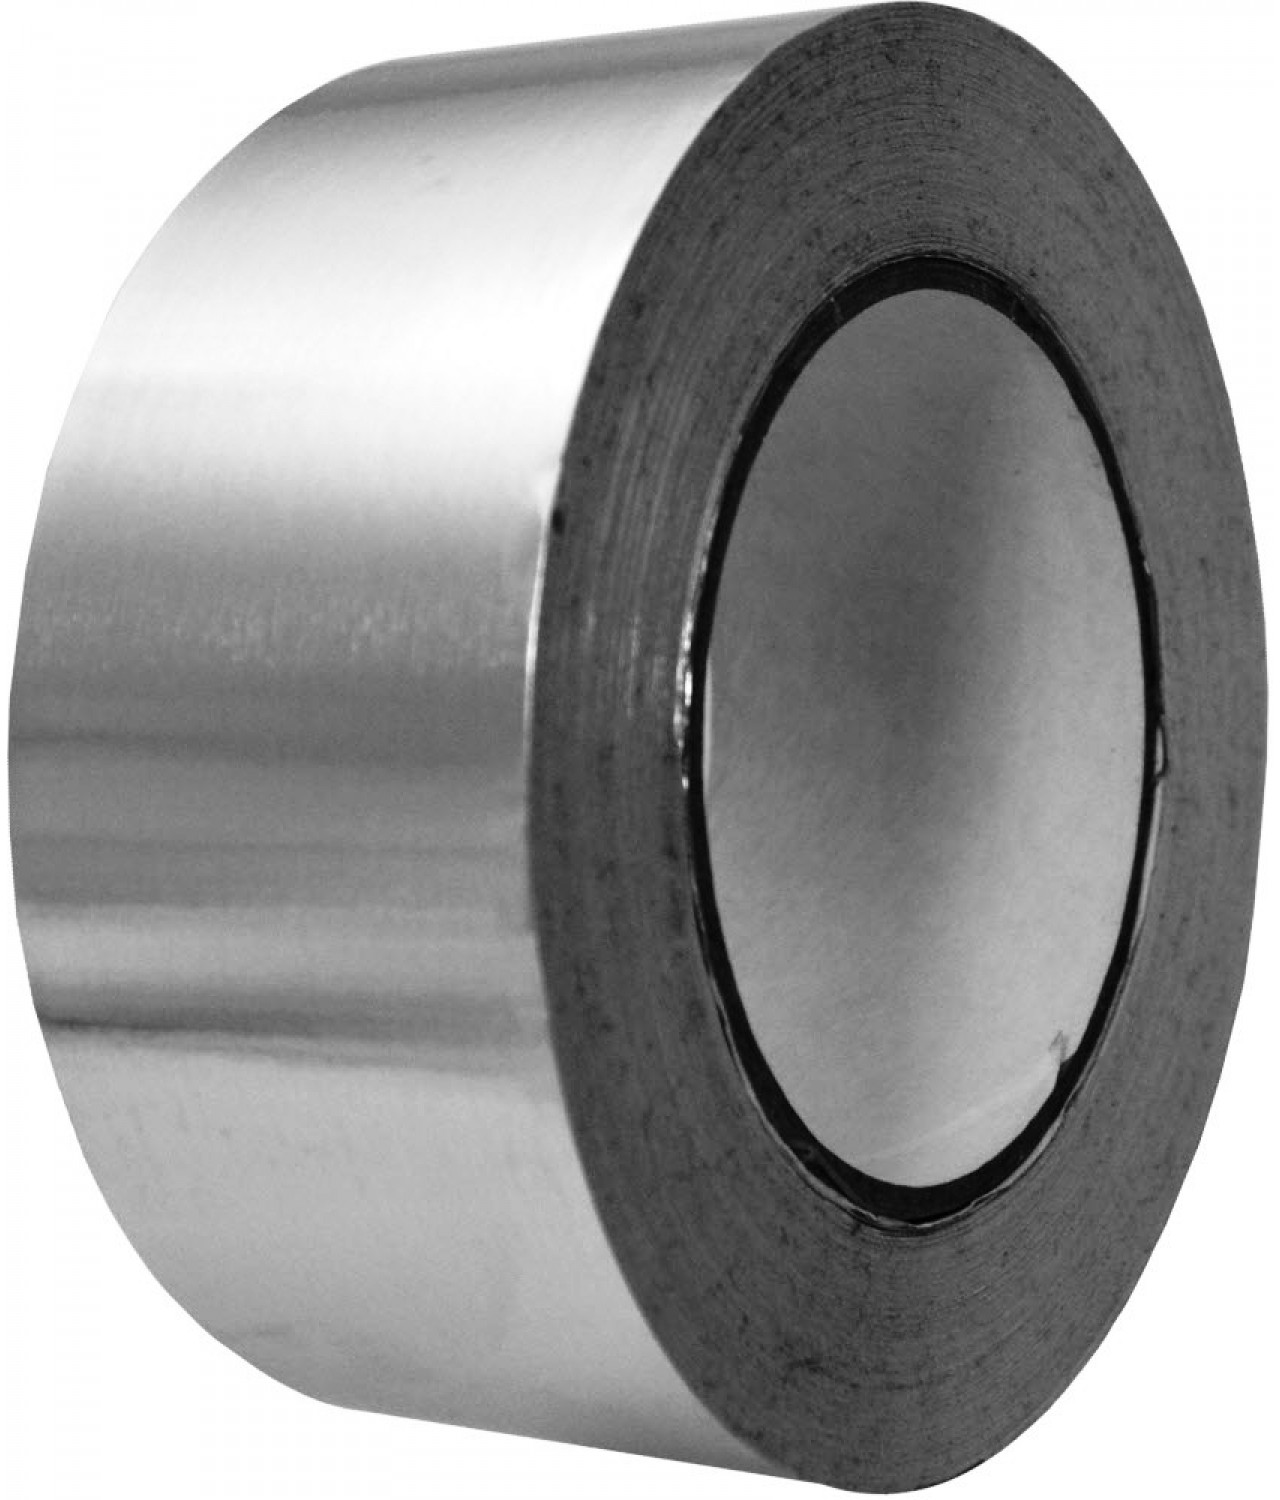 Adhesive tape (aluminium foil) AL50-50-350, 5cmx50m, 350 °C